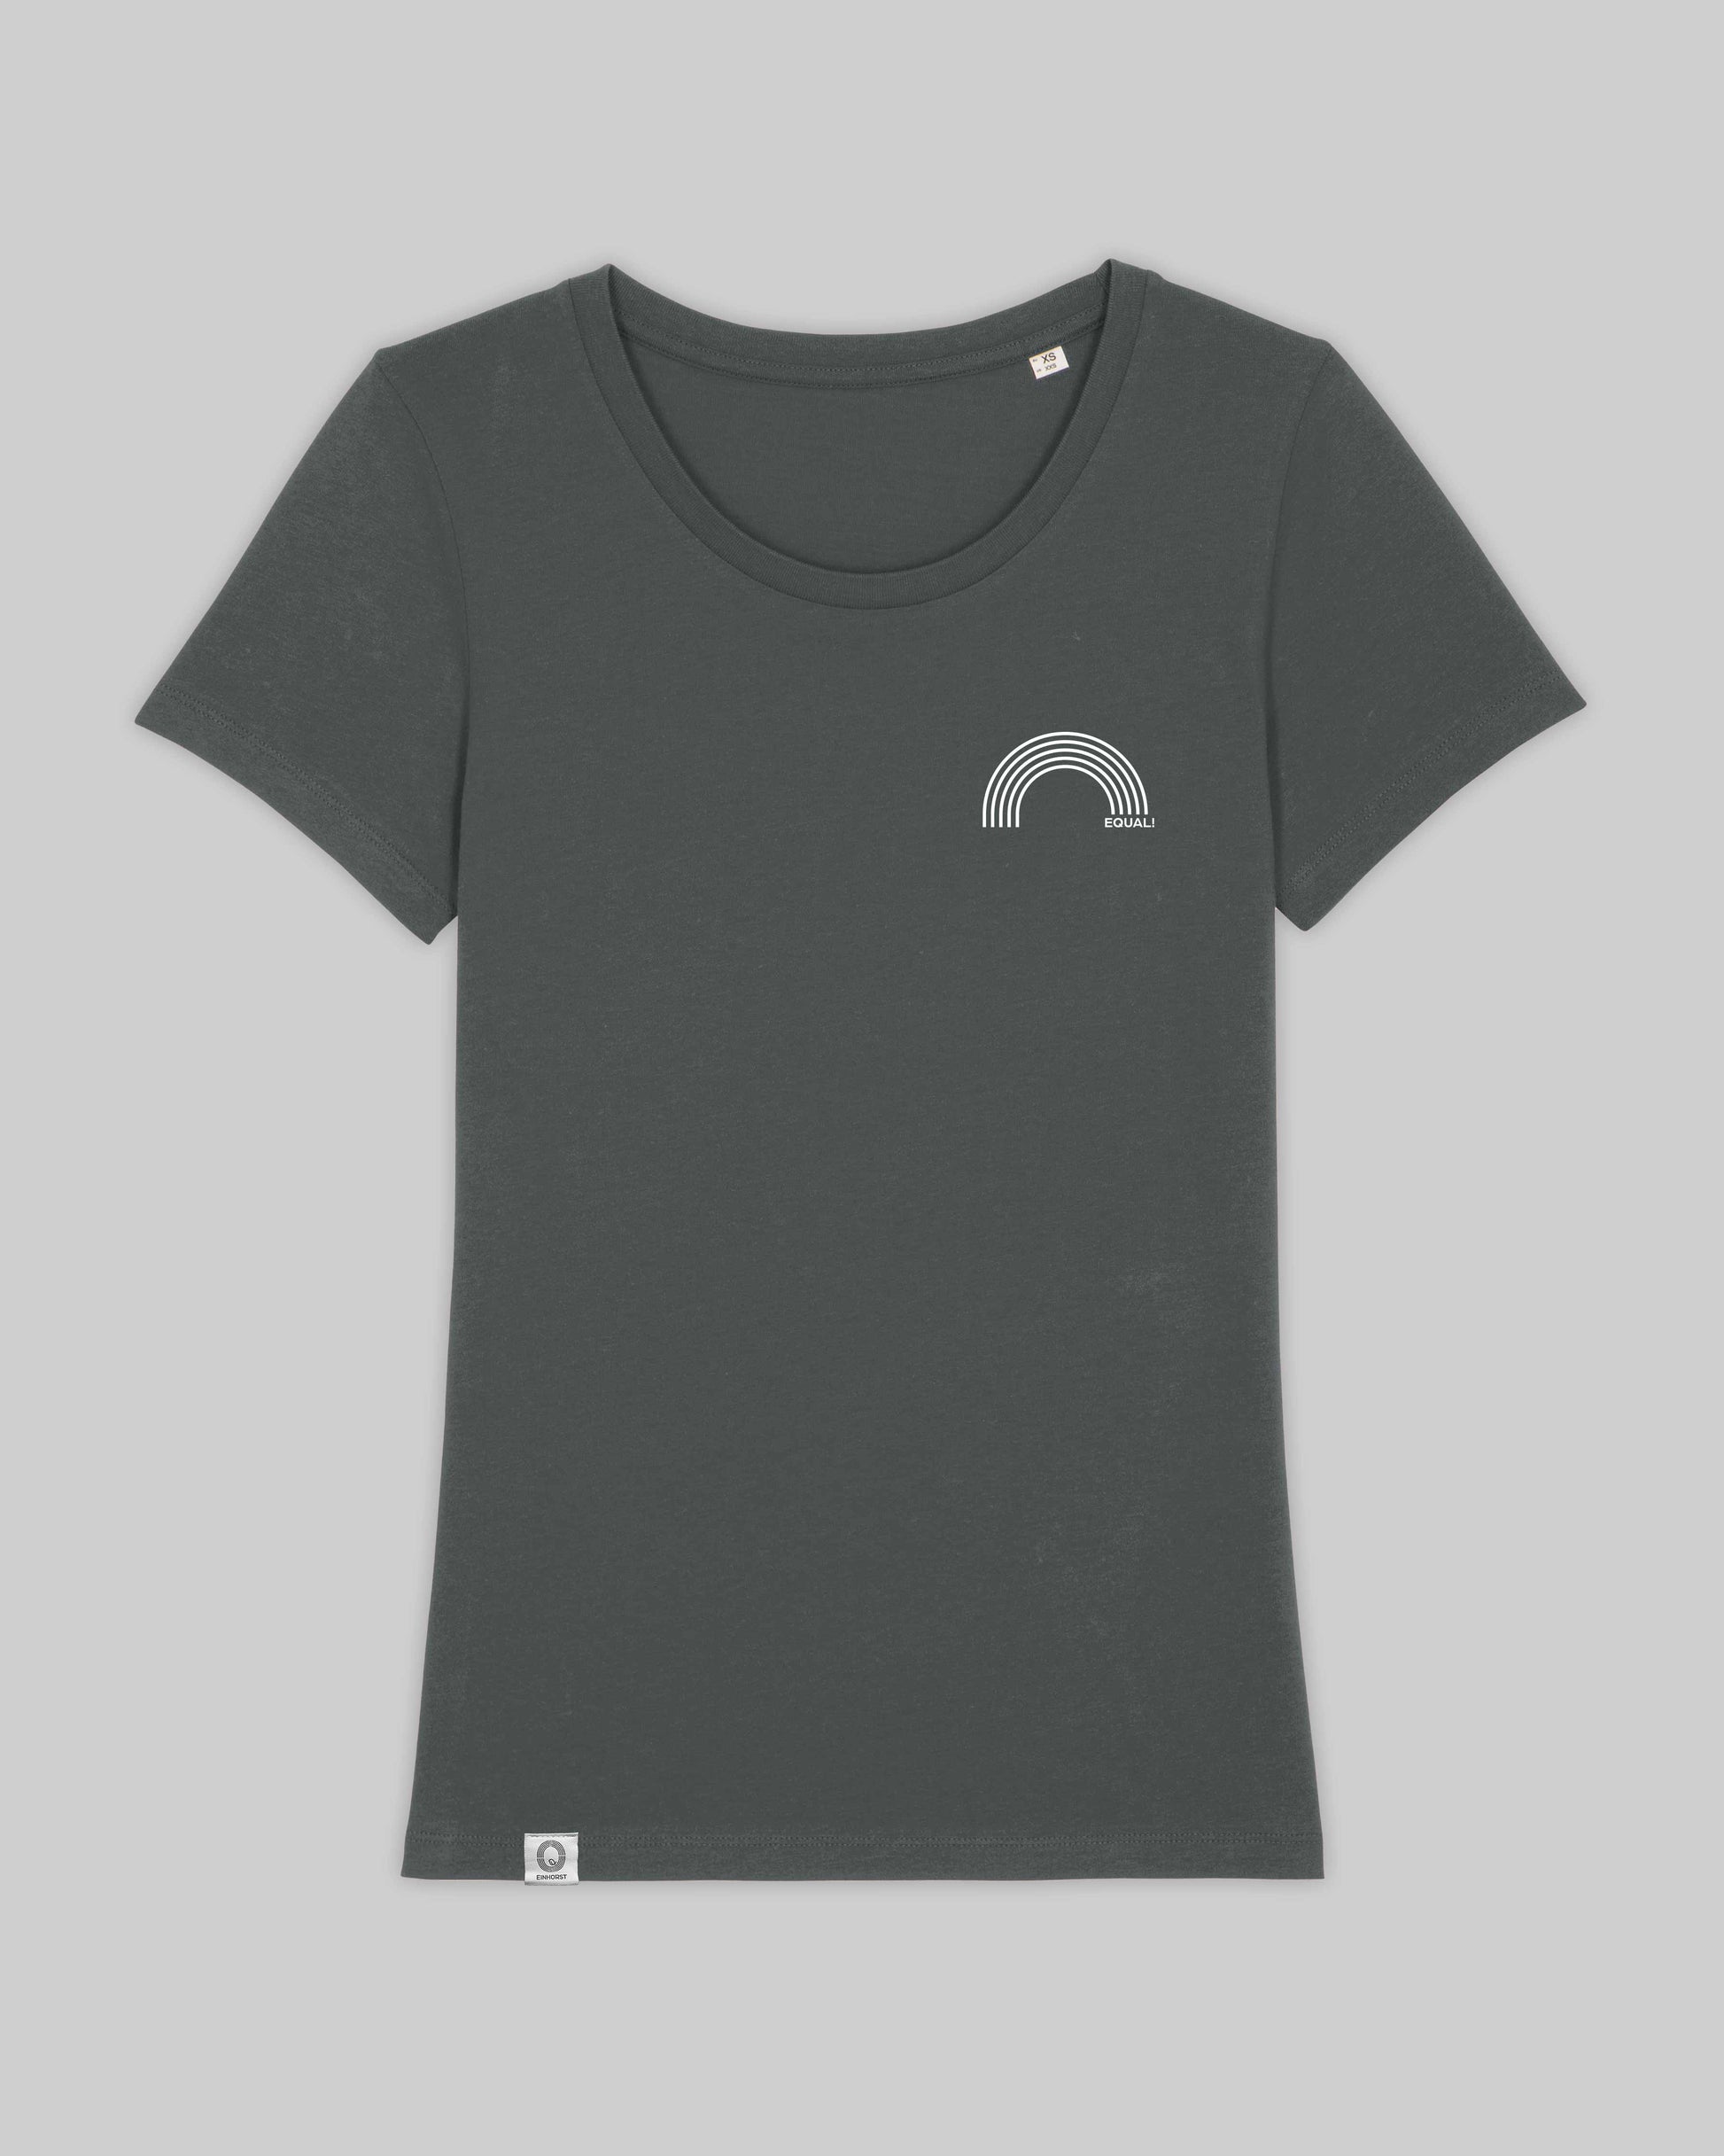 EINHORST® Organic Shirt tailliert in "Anthracite" mit dem Motiv "equal Regenbogen" in der Kombination weißer Regenbogen mit weißer Schrift, Bild von Shirt von vorne